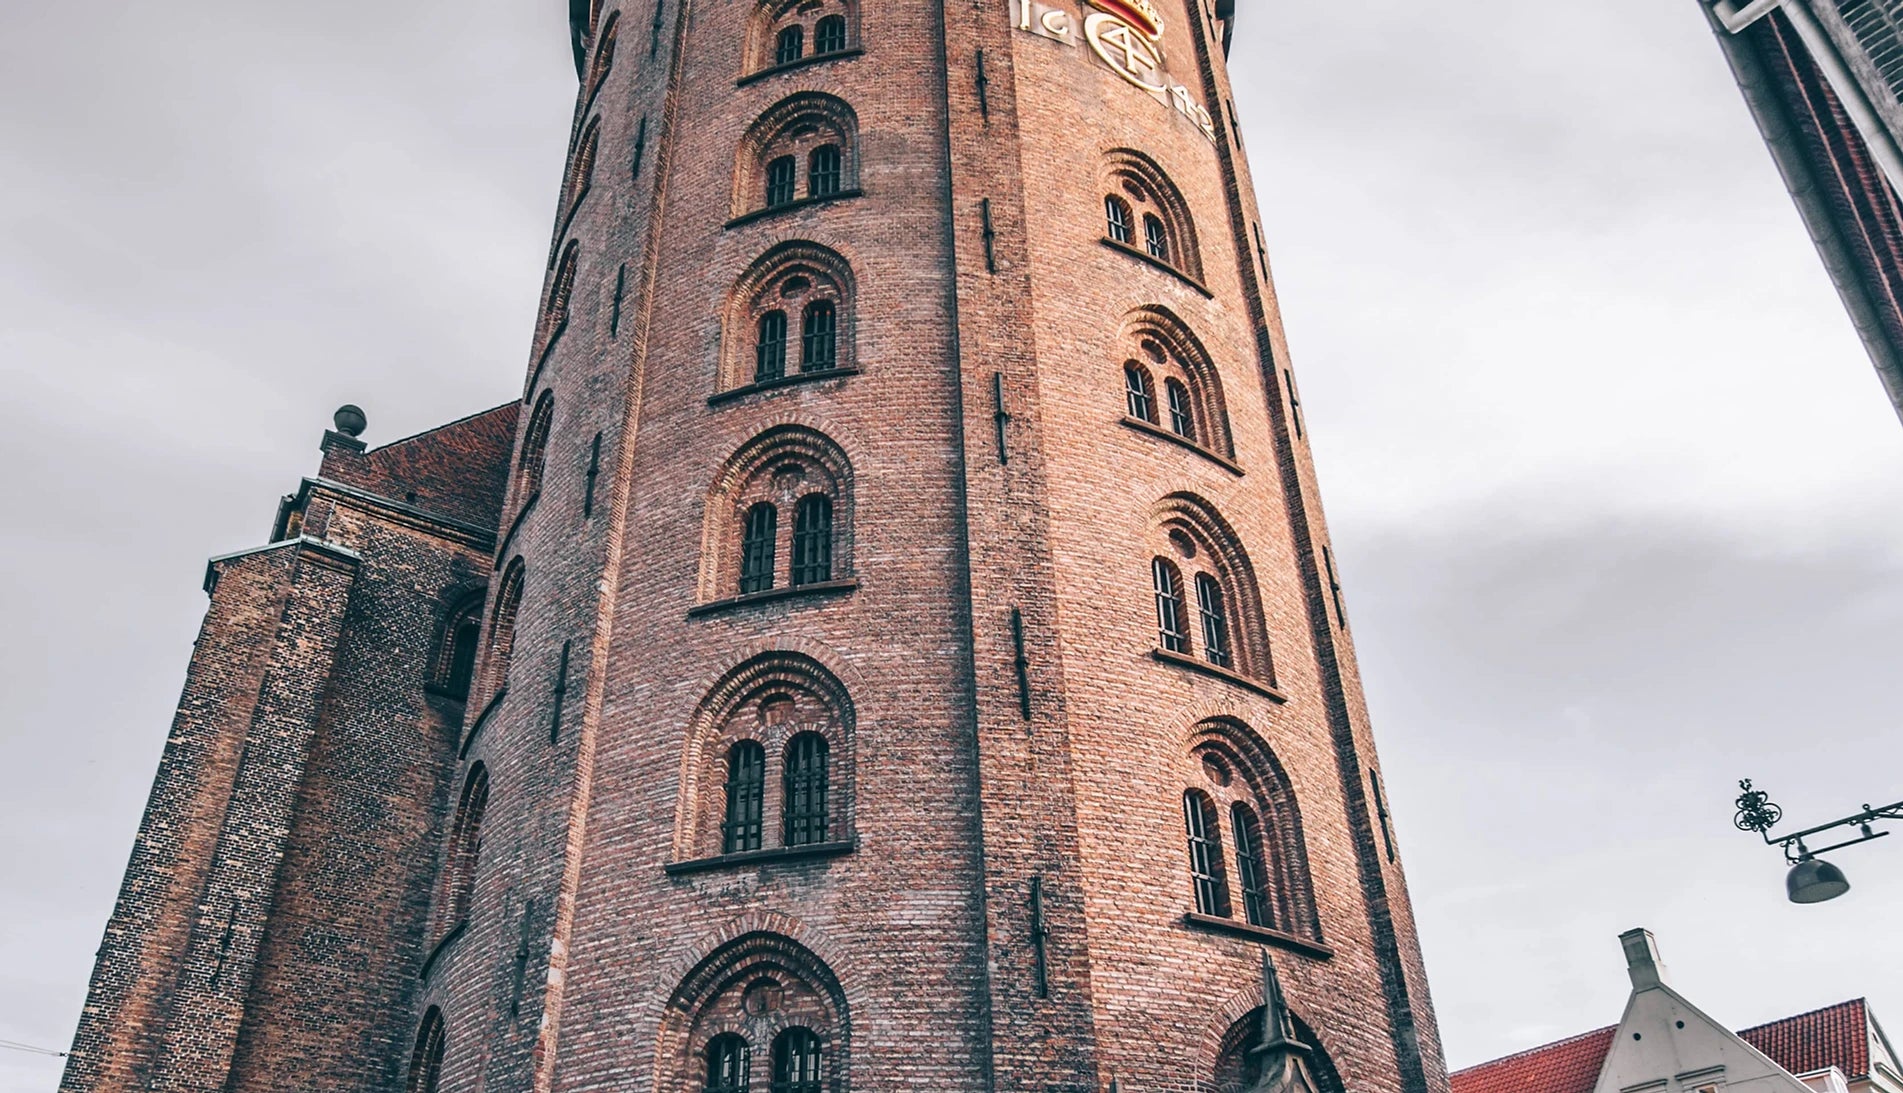 Copenhagen - The Murder by The Round Tower